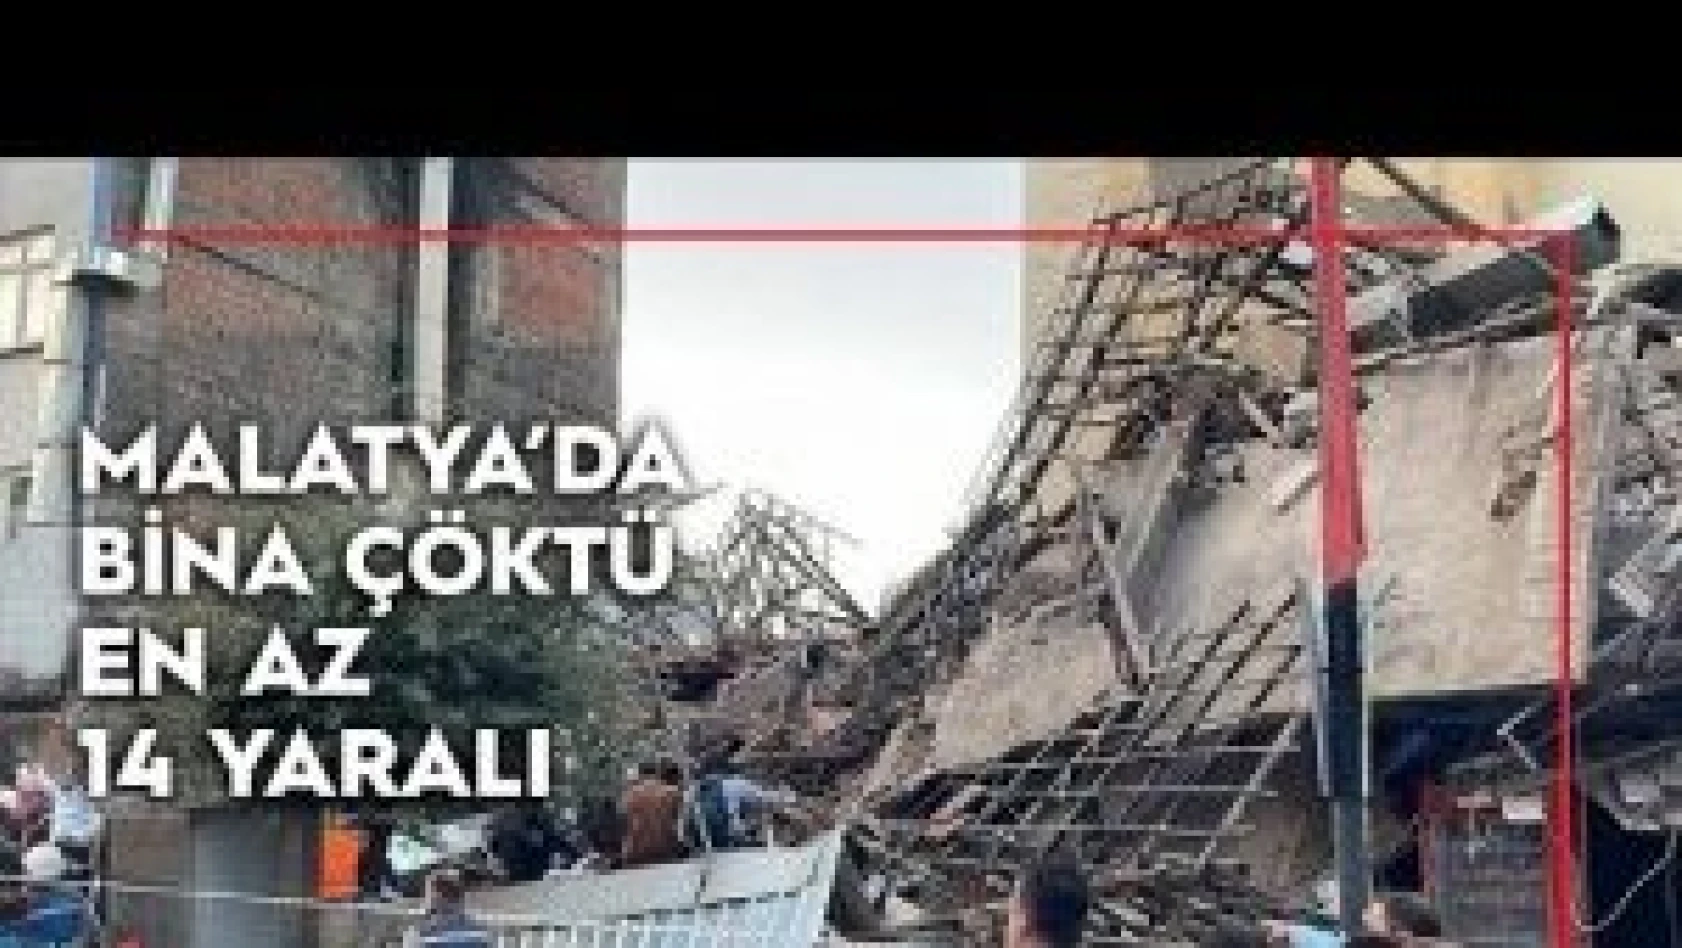 Malatya'da bina çöktü: En az 14 yaralı var